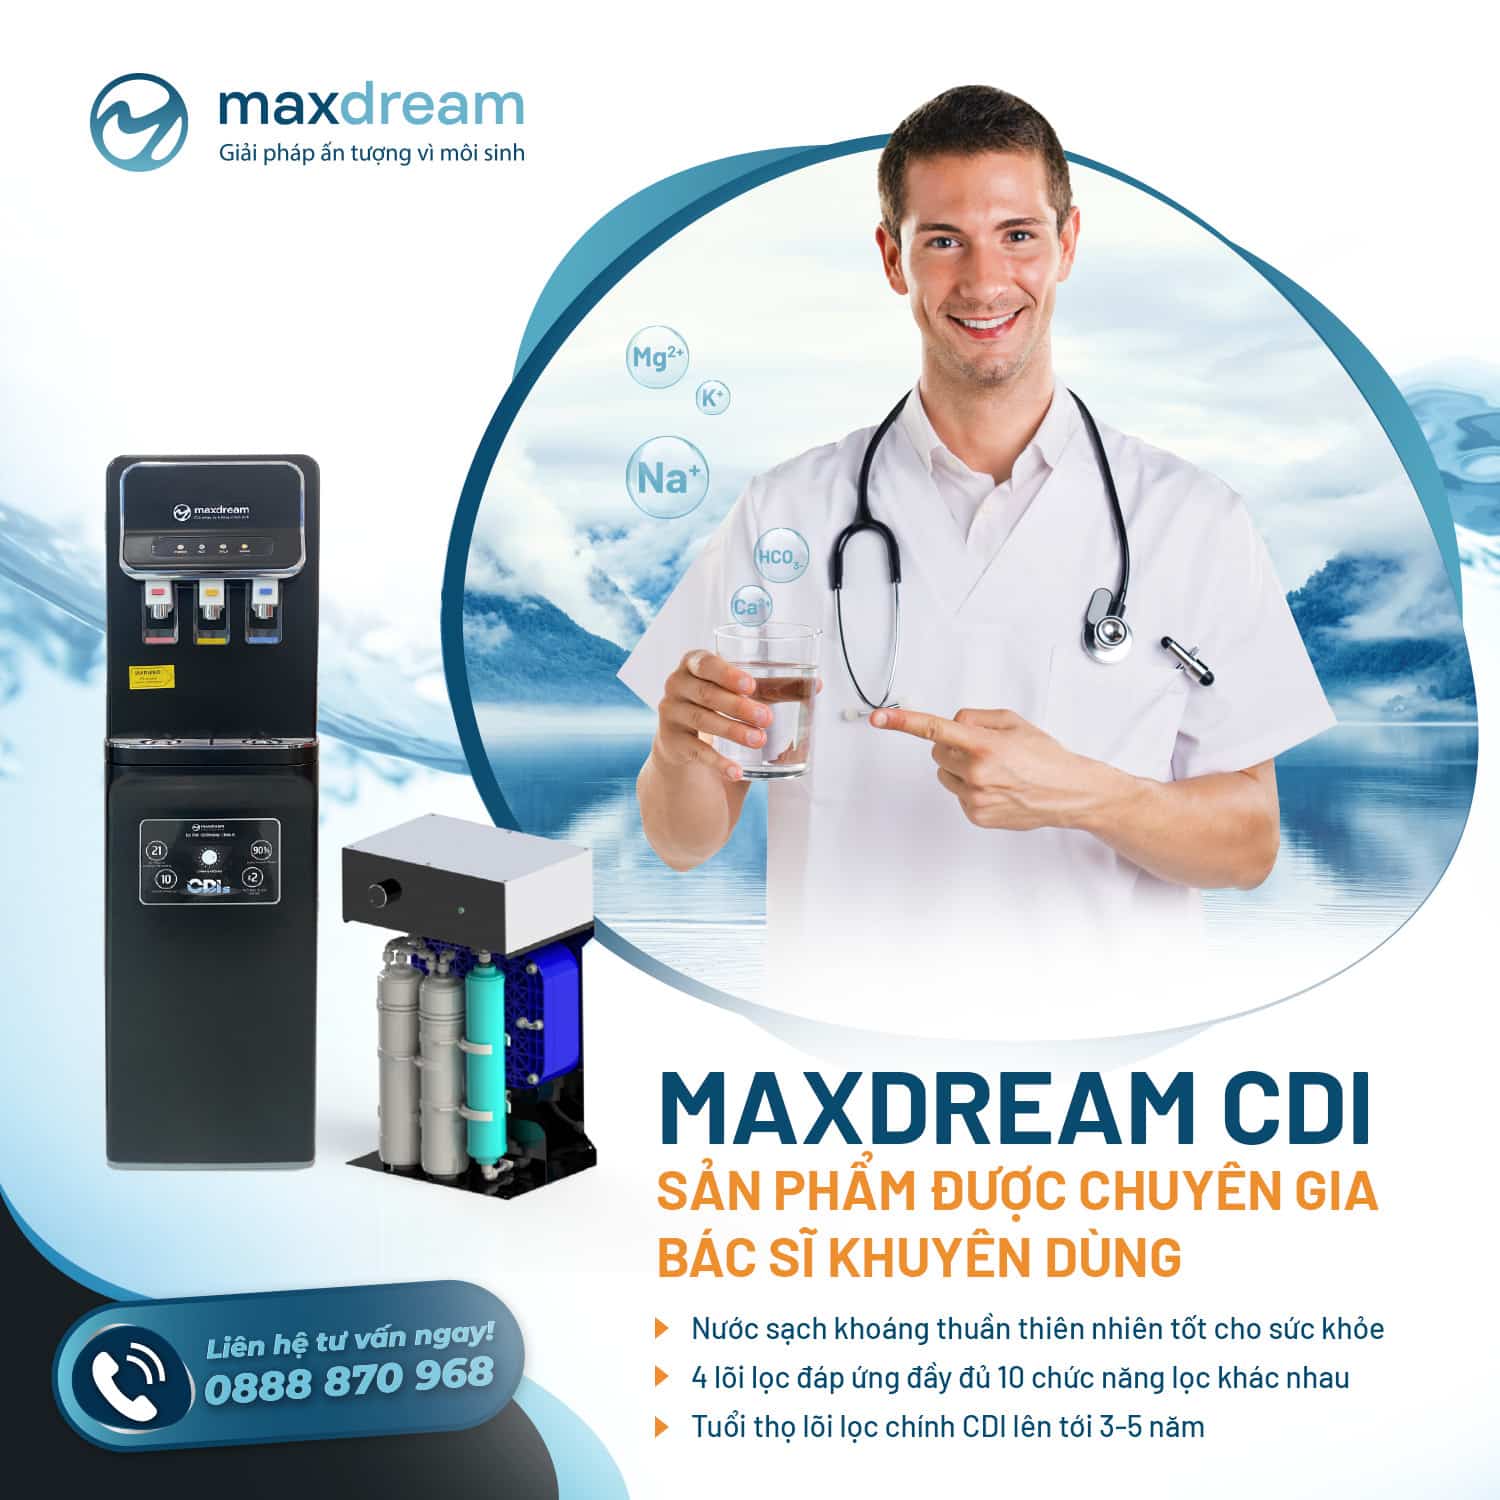 Máy lọc nước Maxdream sản phẩm được các chuyên gia tin dùng